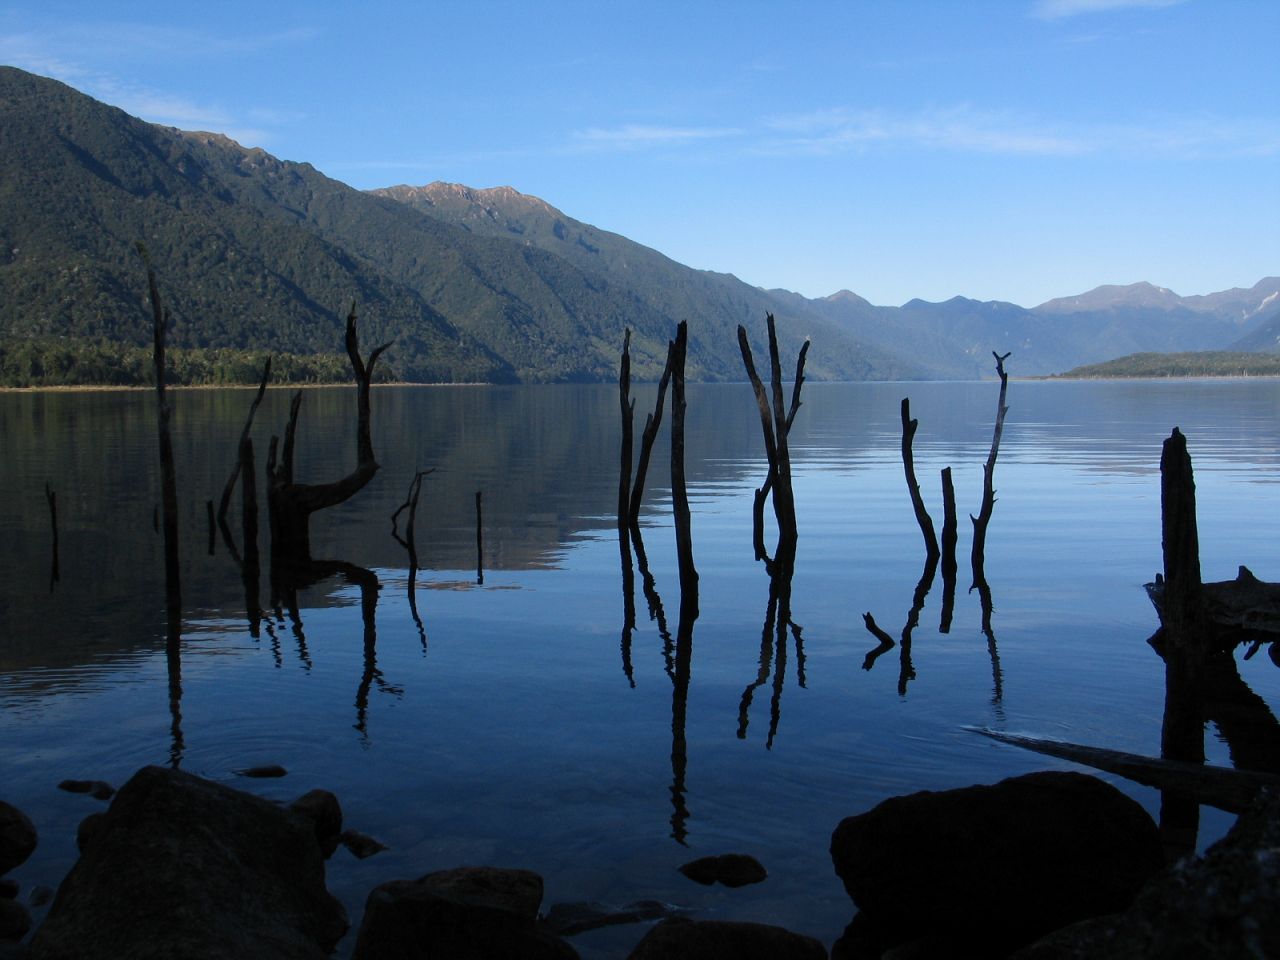 fotka / image Lake Monowai, New Zealand